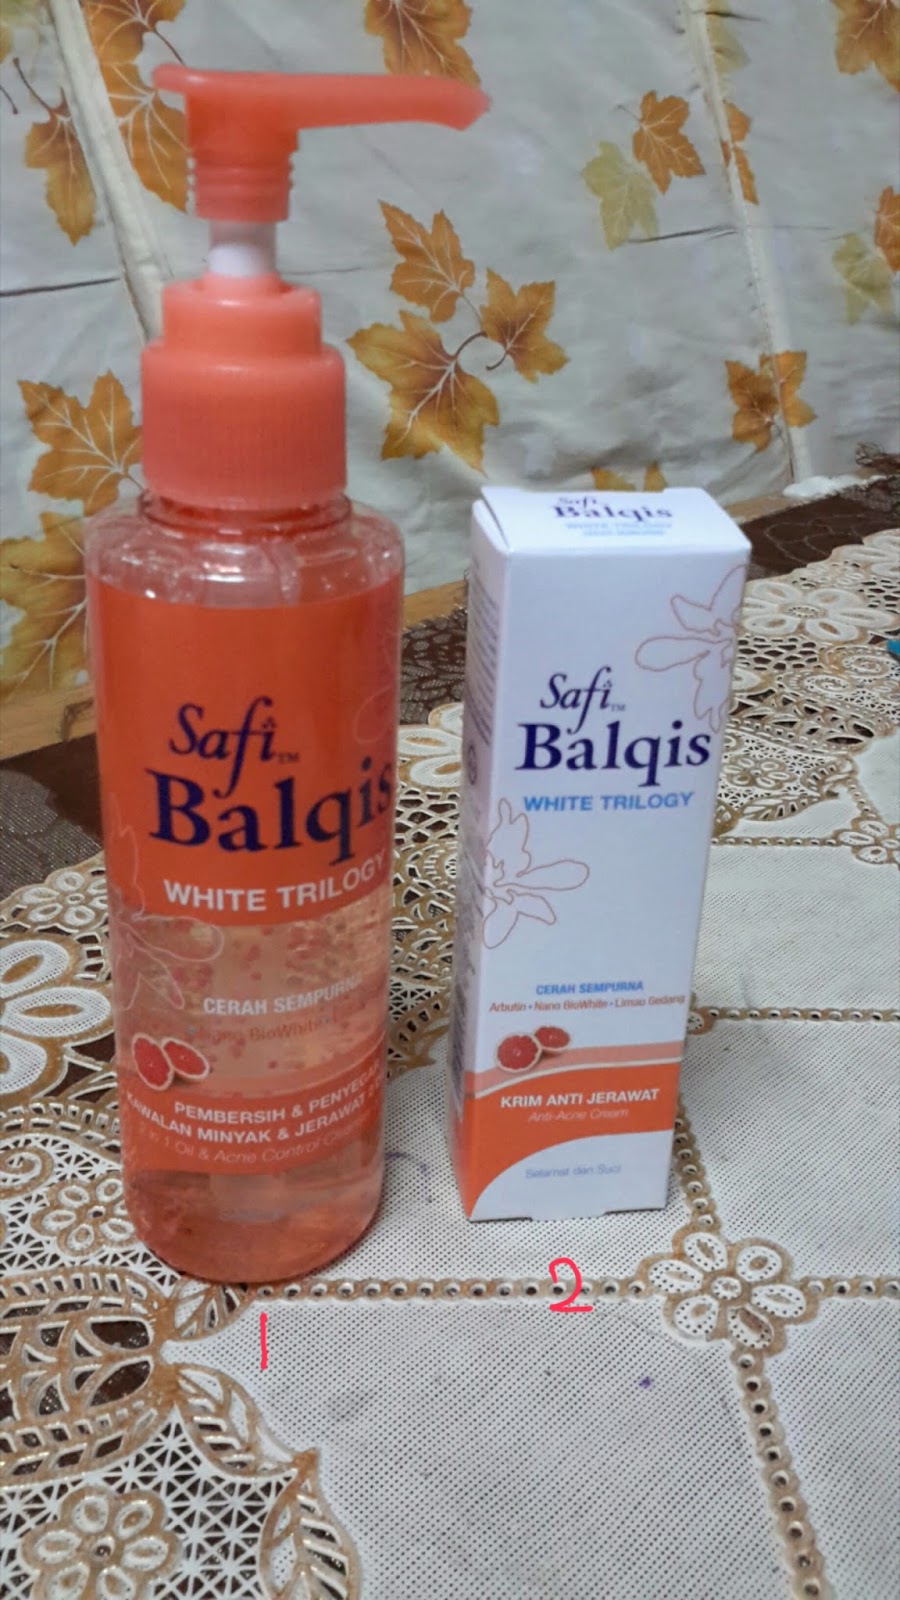 Anugerah Terindah Produk Safi Balqis White Trilogy